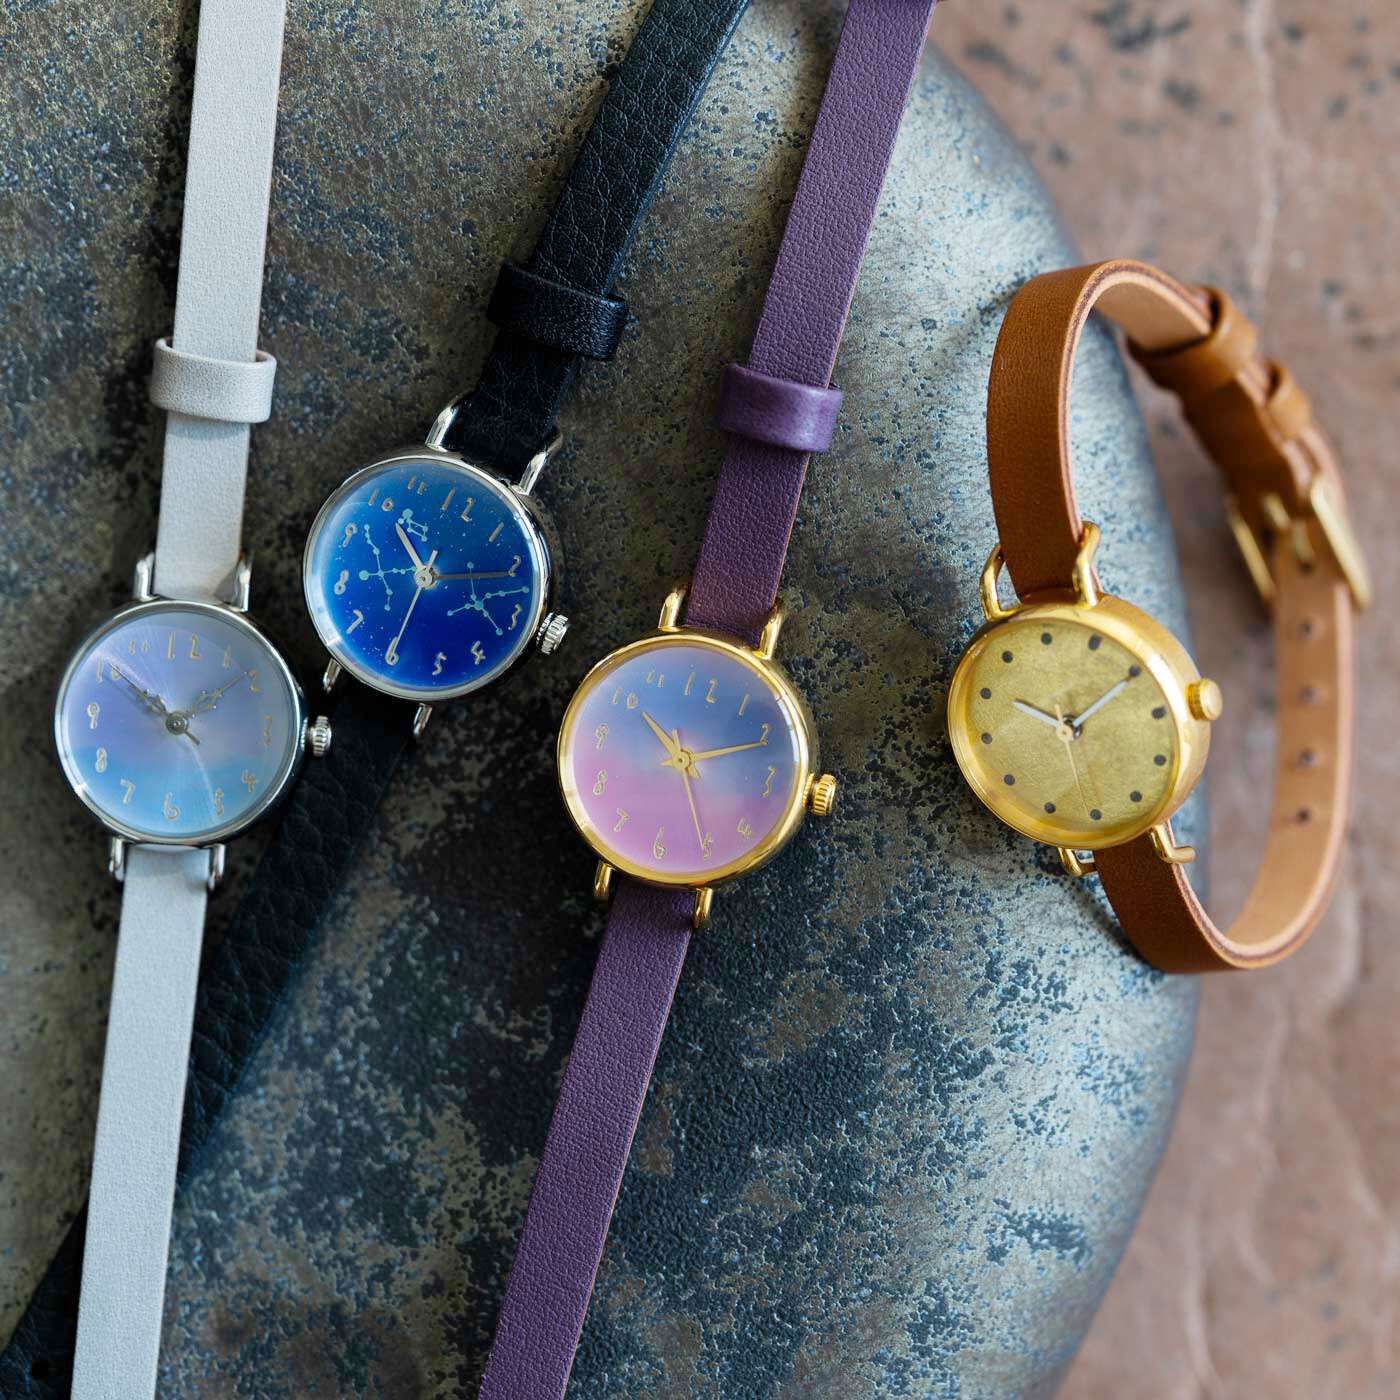 ＆Stories|金沢の時計職人が手掛けた　朝焼けに見惚れる腕時計〈マルベリーパープル〉|職人さんが一点ずつ丁寧に作る、人の手から生まれたあたたかみが感じられる時計です。